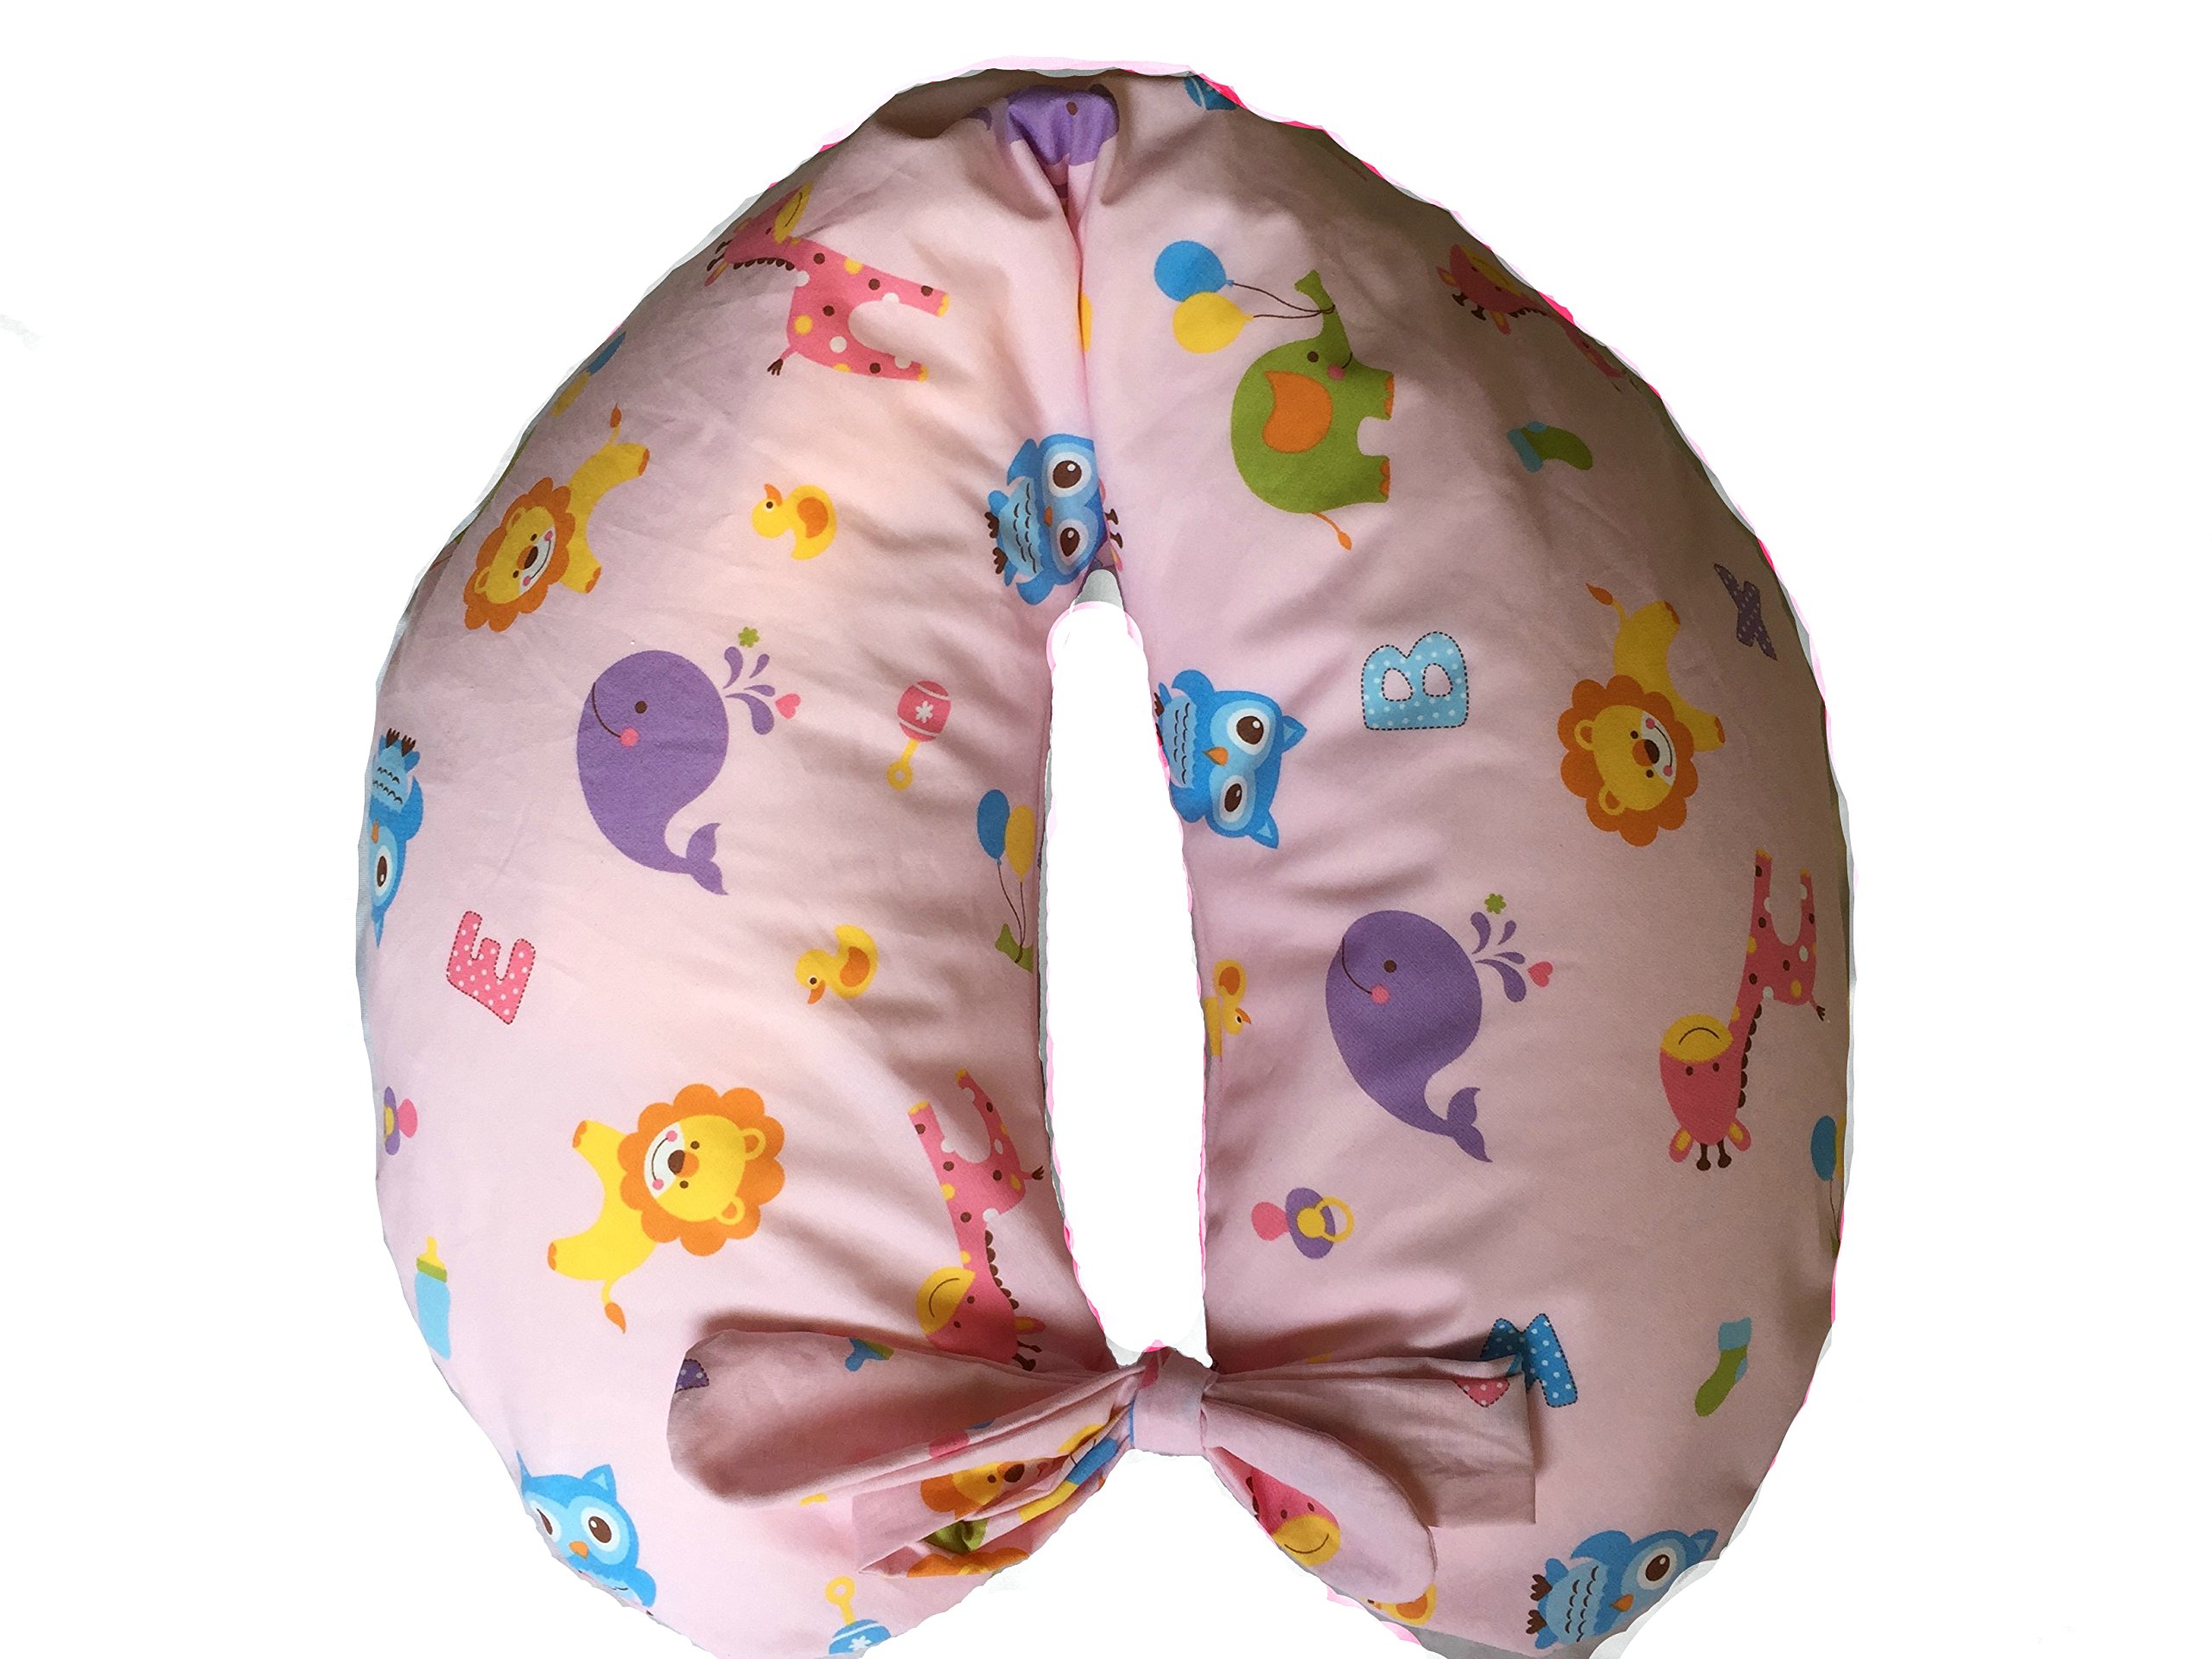 Stillkissen für Neugeborene + Kissenbezug mit Schnürung, abnehmbar und waschbar, gefüllt mit Mikroperlen), rosa Zoo, hergestellt in Italien